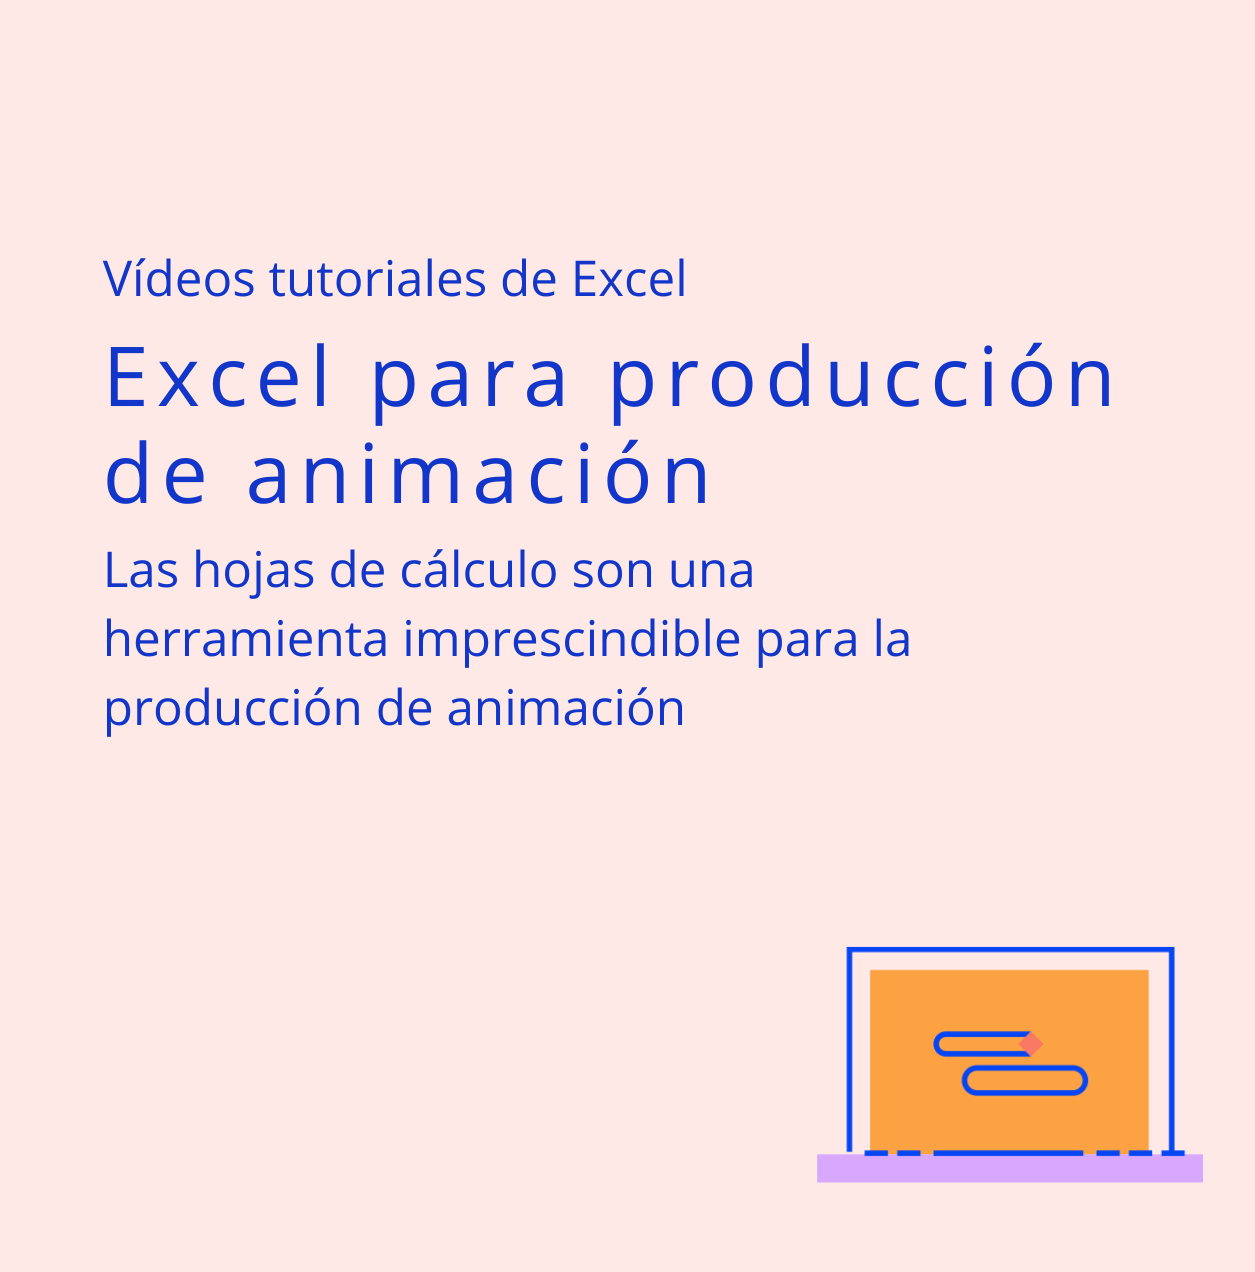 Vídeos tutoriales de Excel para gestión de producción de animación